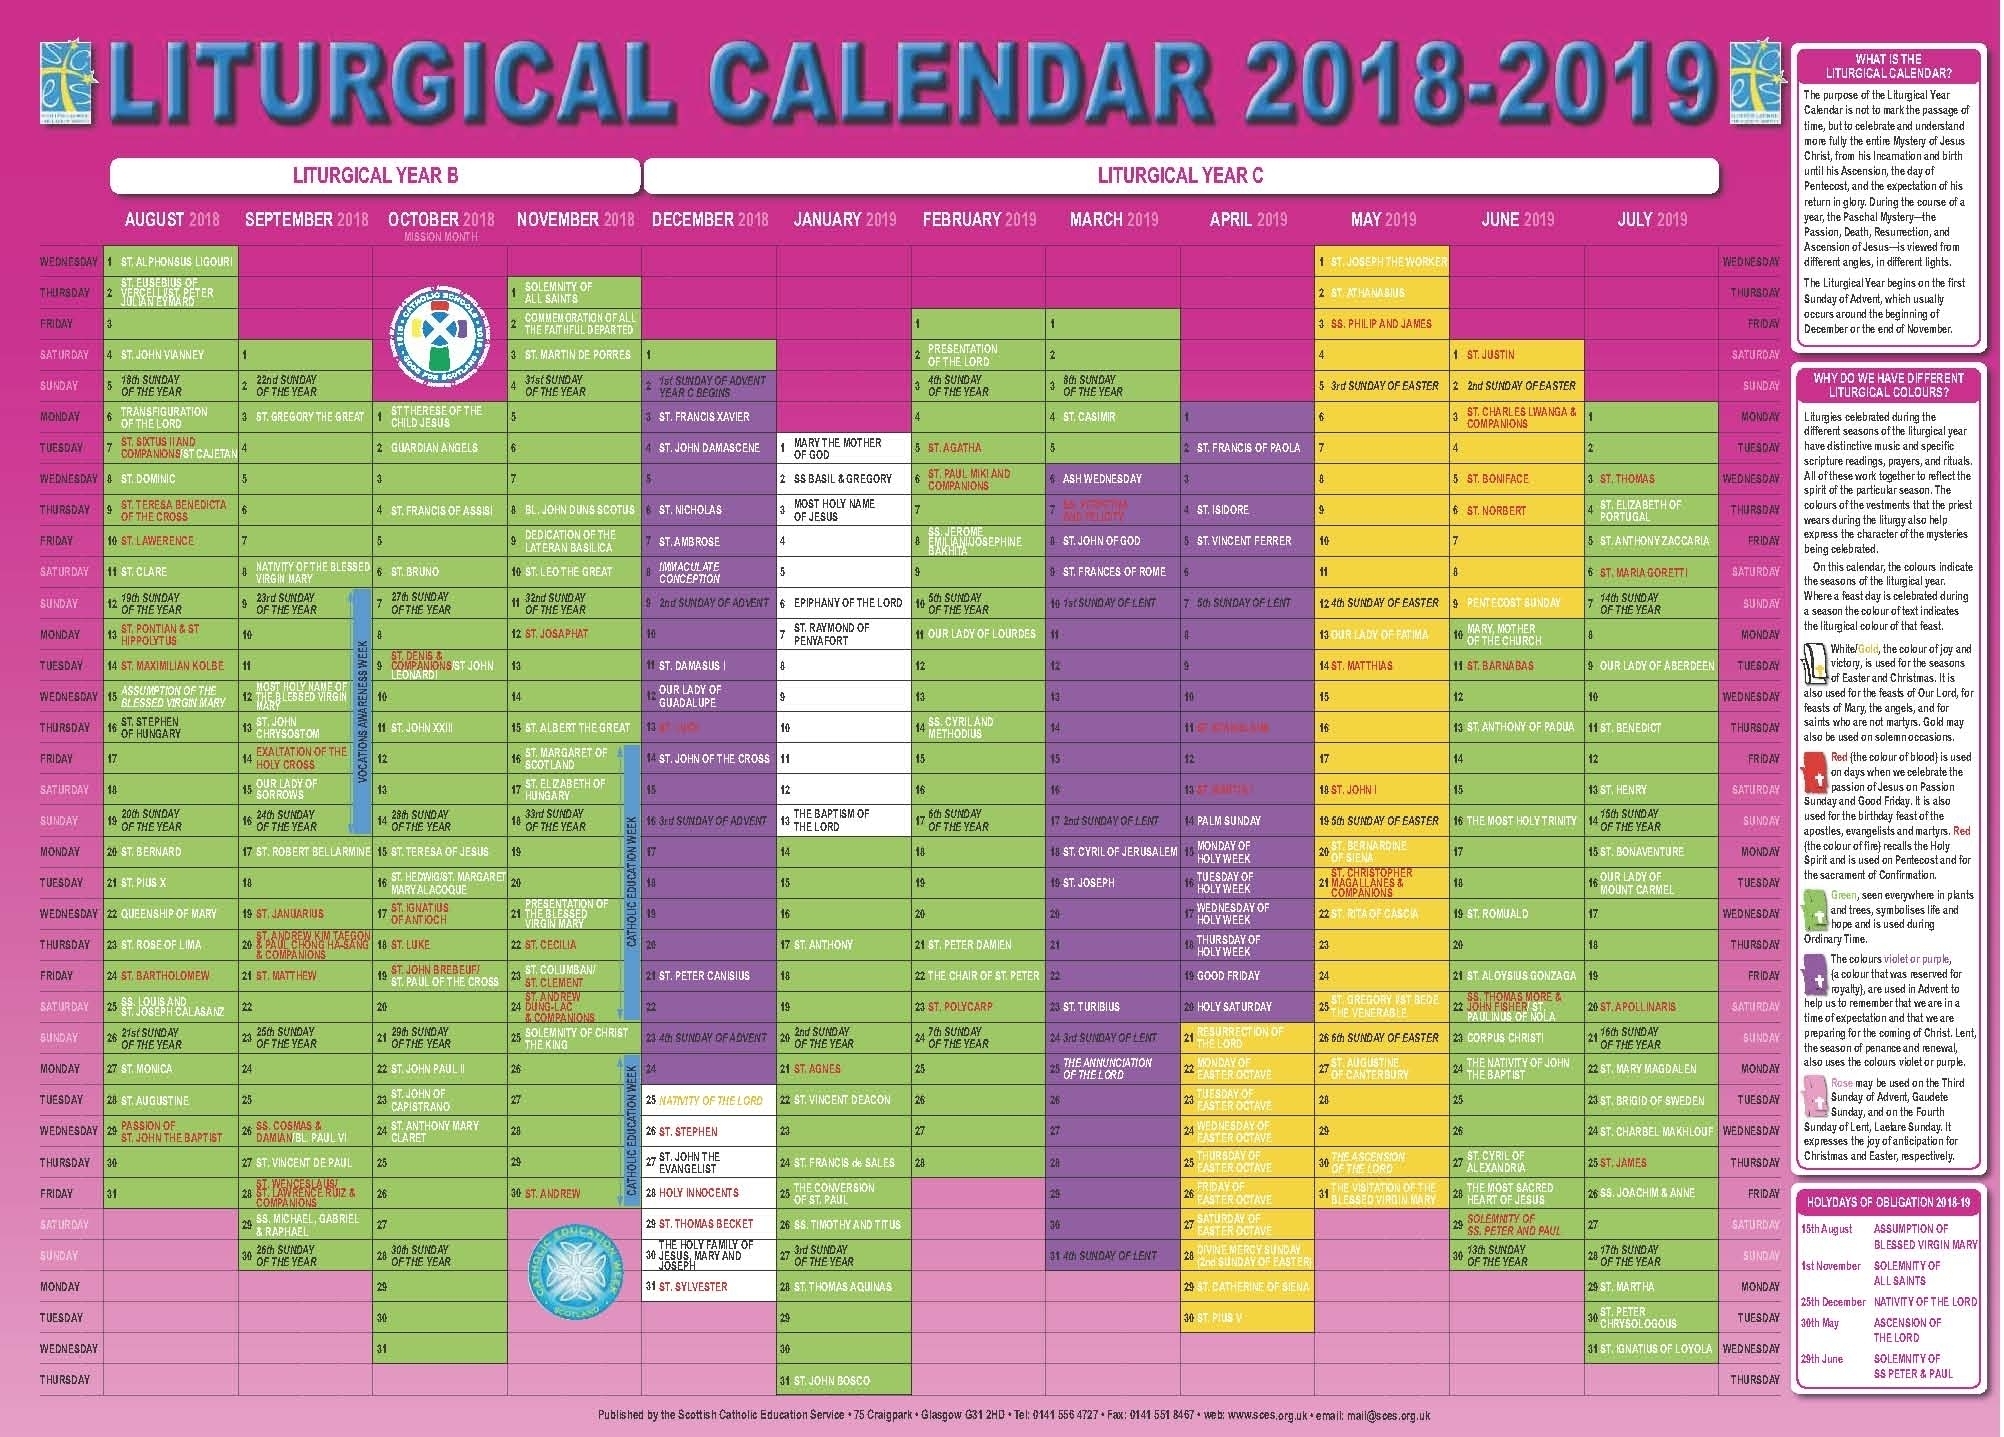 Catholic Liturgical Calendar 2020 Pdf - Calendar Inspiration for Free Printable Liturgical Calendar For 2020